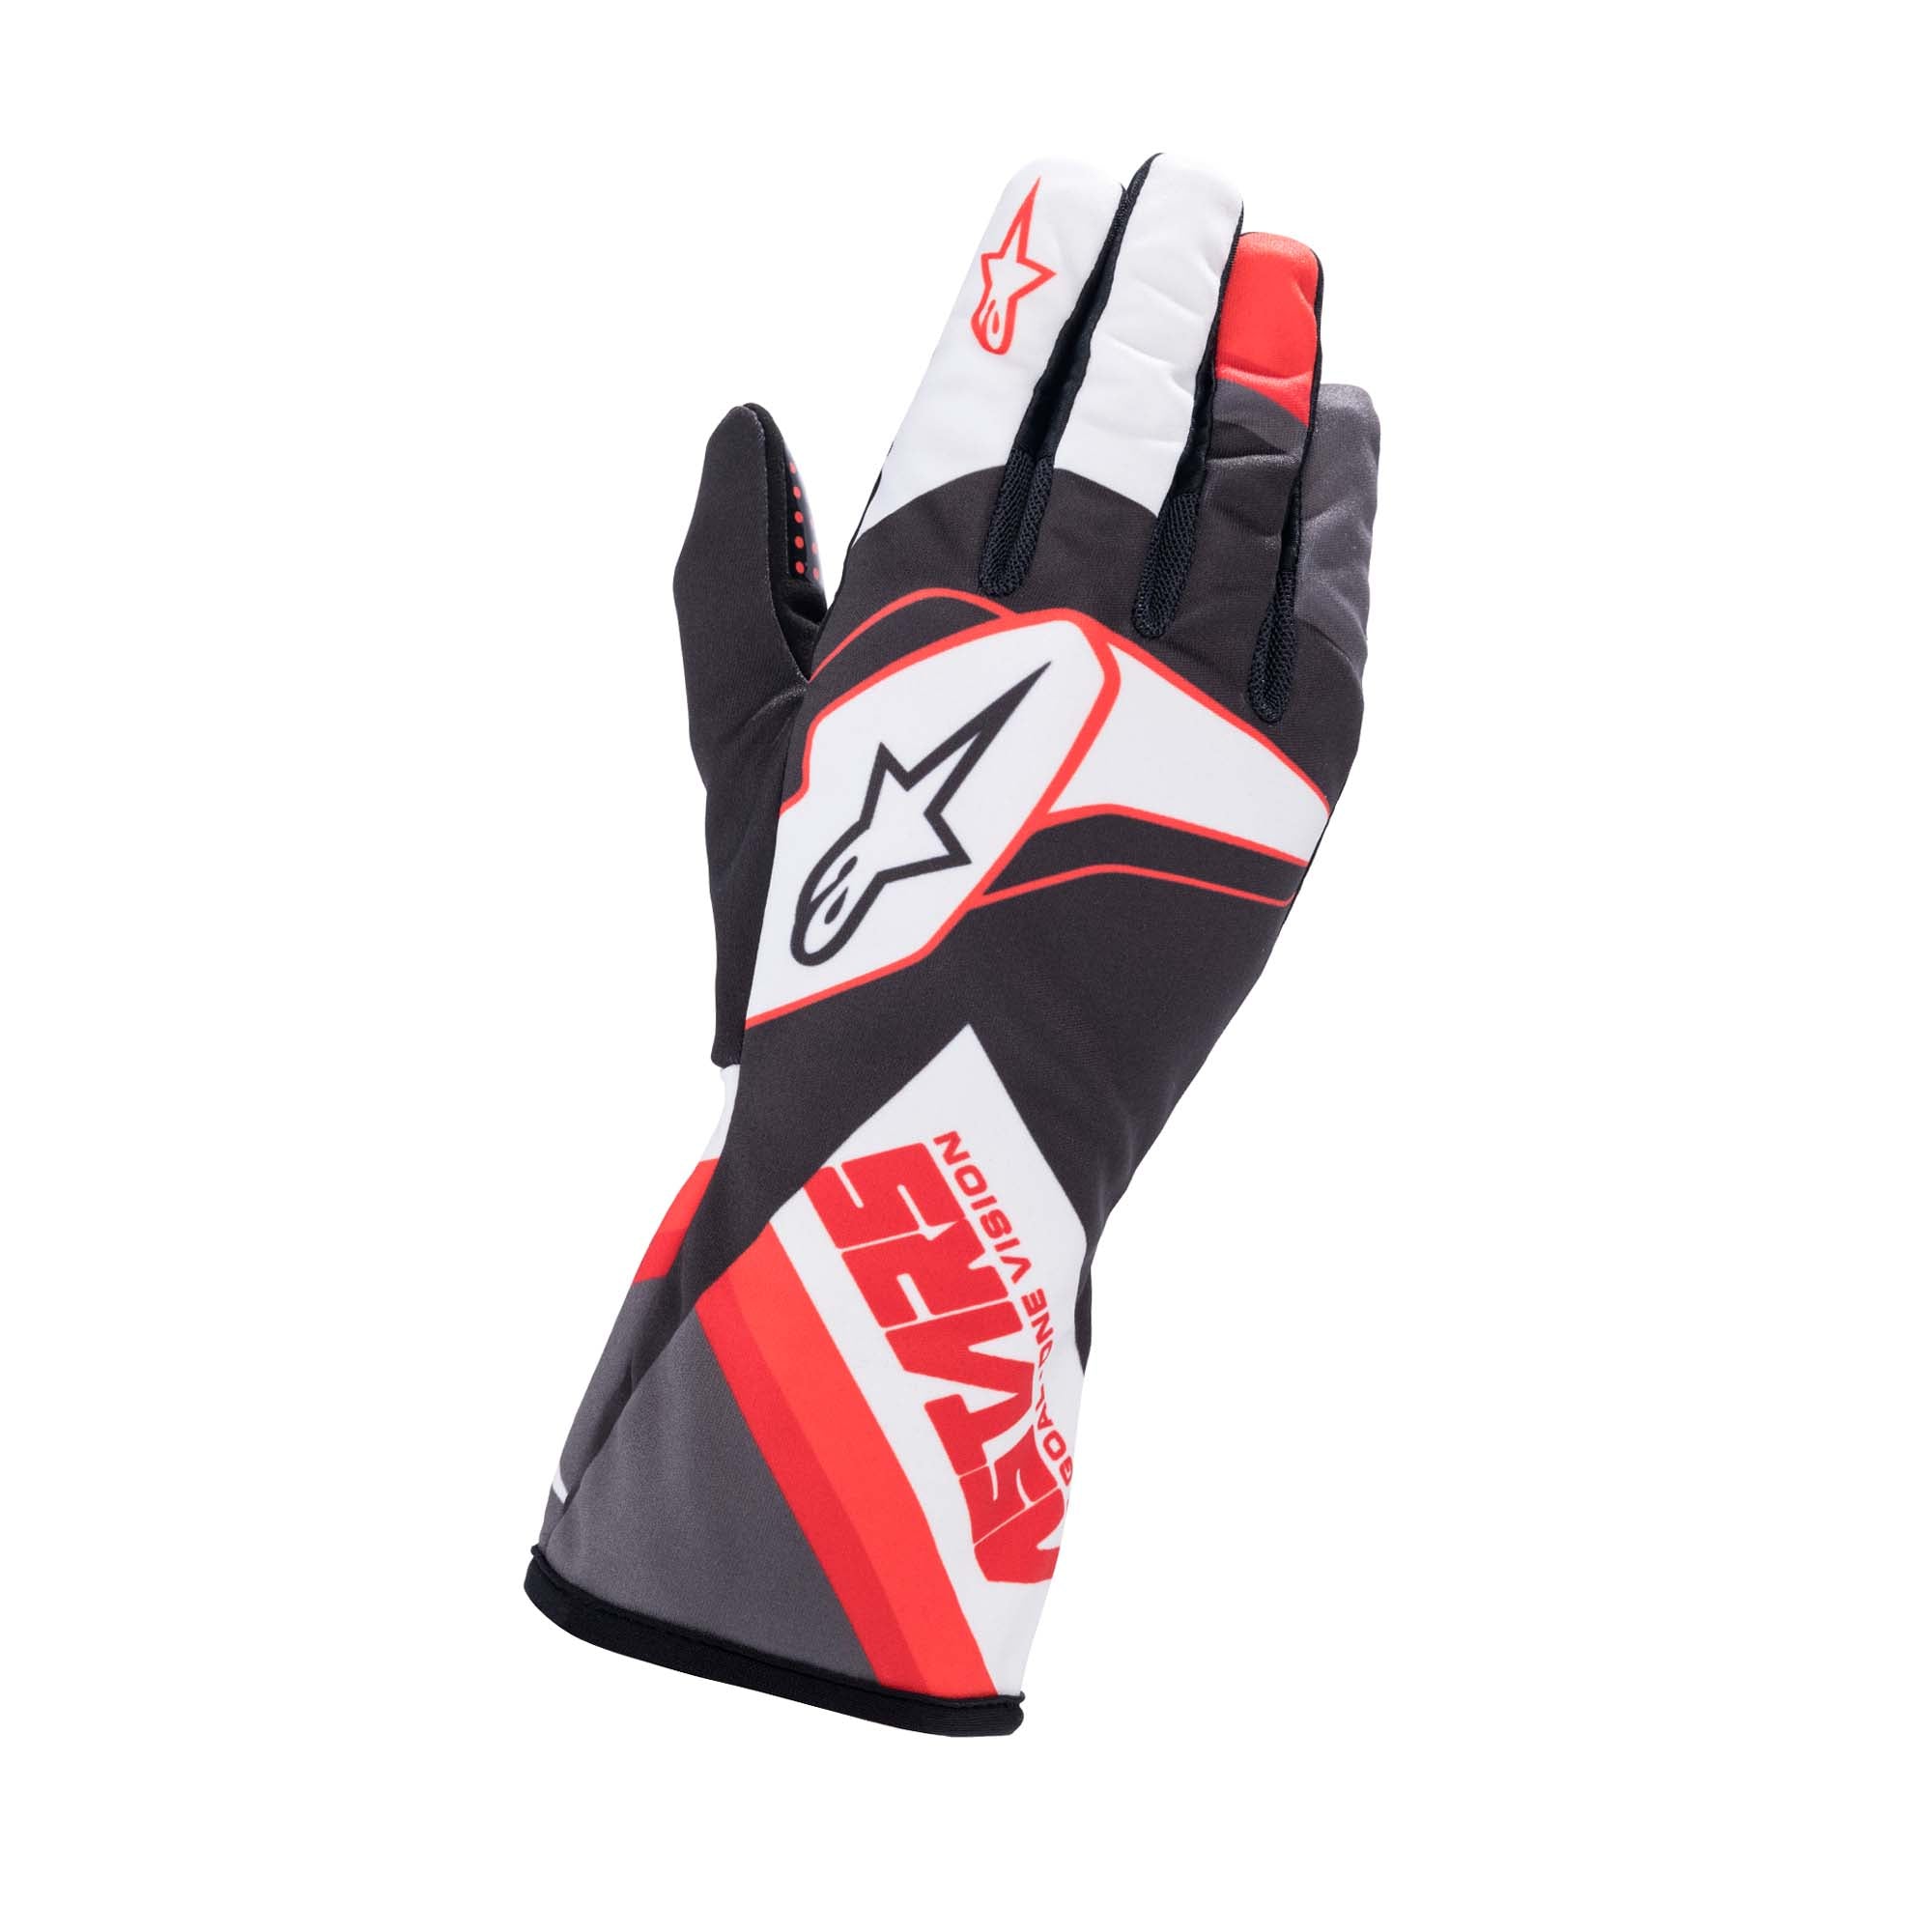 Alpinestars Tech-1 K Race S v2 Youth Karting Gloves - Graphic, Black/White/Red